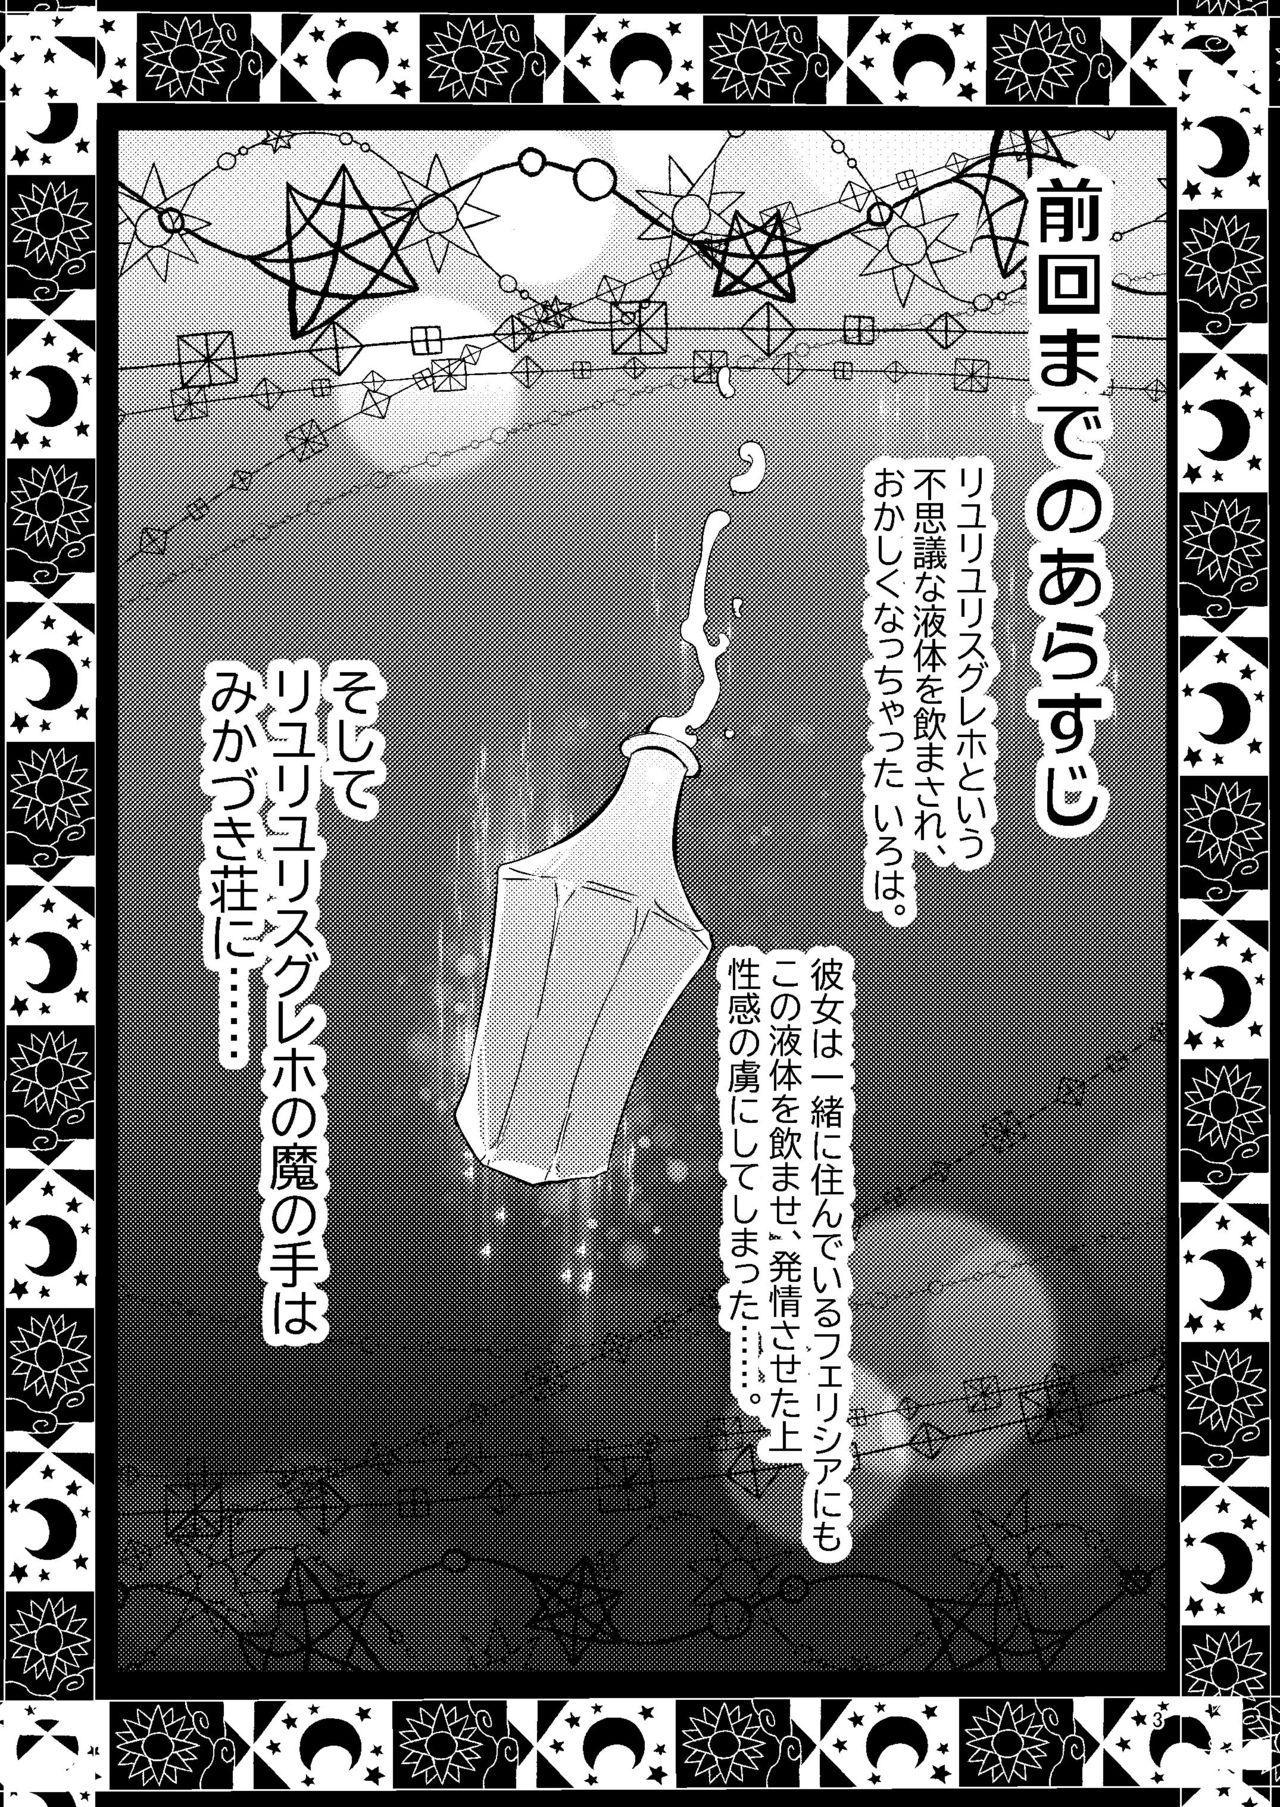 Clit Riyuriyu Risugureho no Uwasa 3 - Puella magi madoka magica side story magia record Jockstrap - Page 2